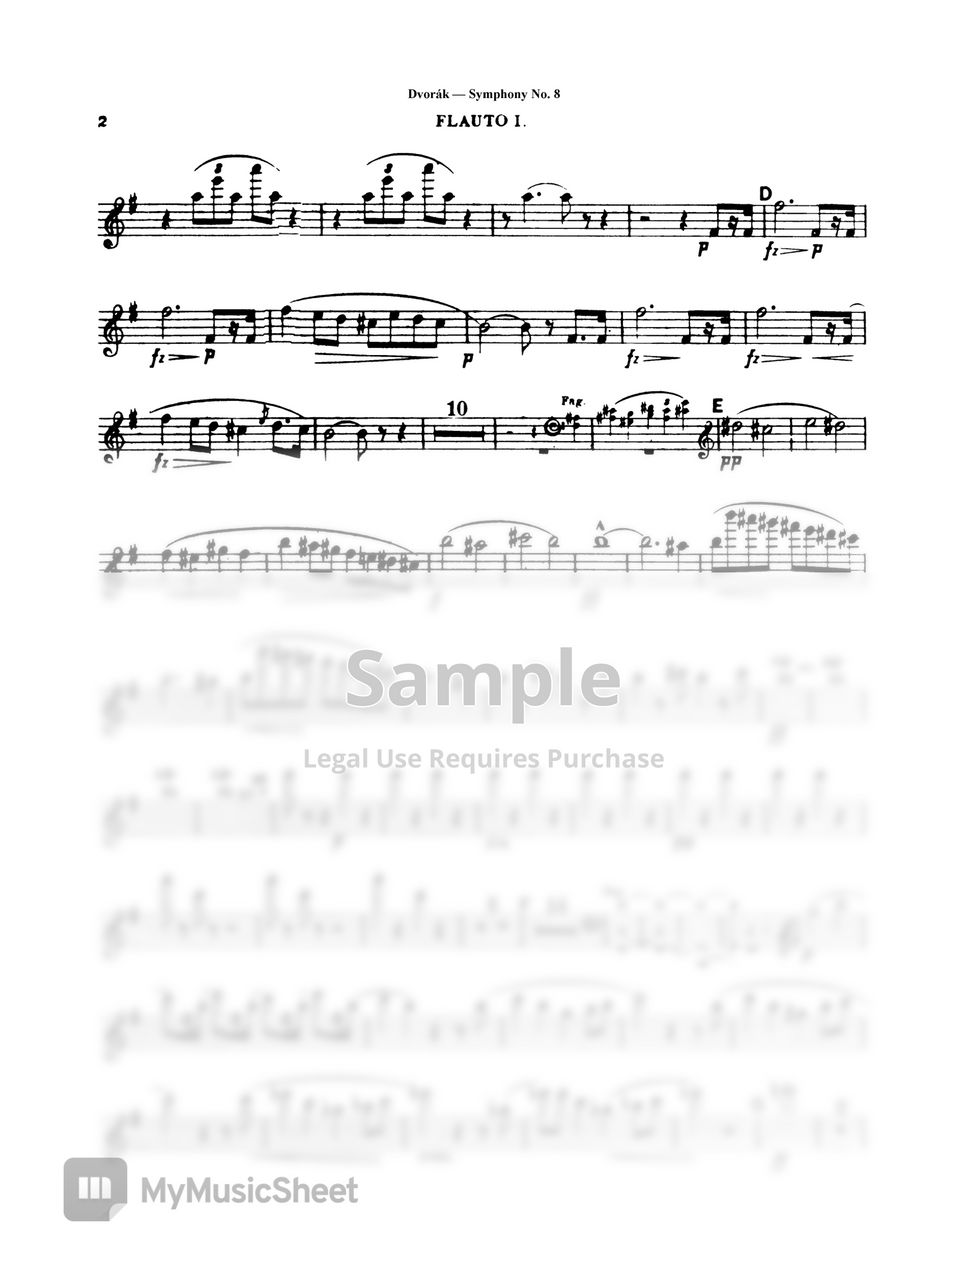 A. Dvorak - Symphony No. 8 by Original Sheet